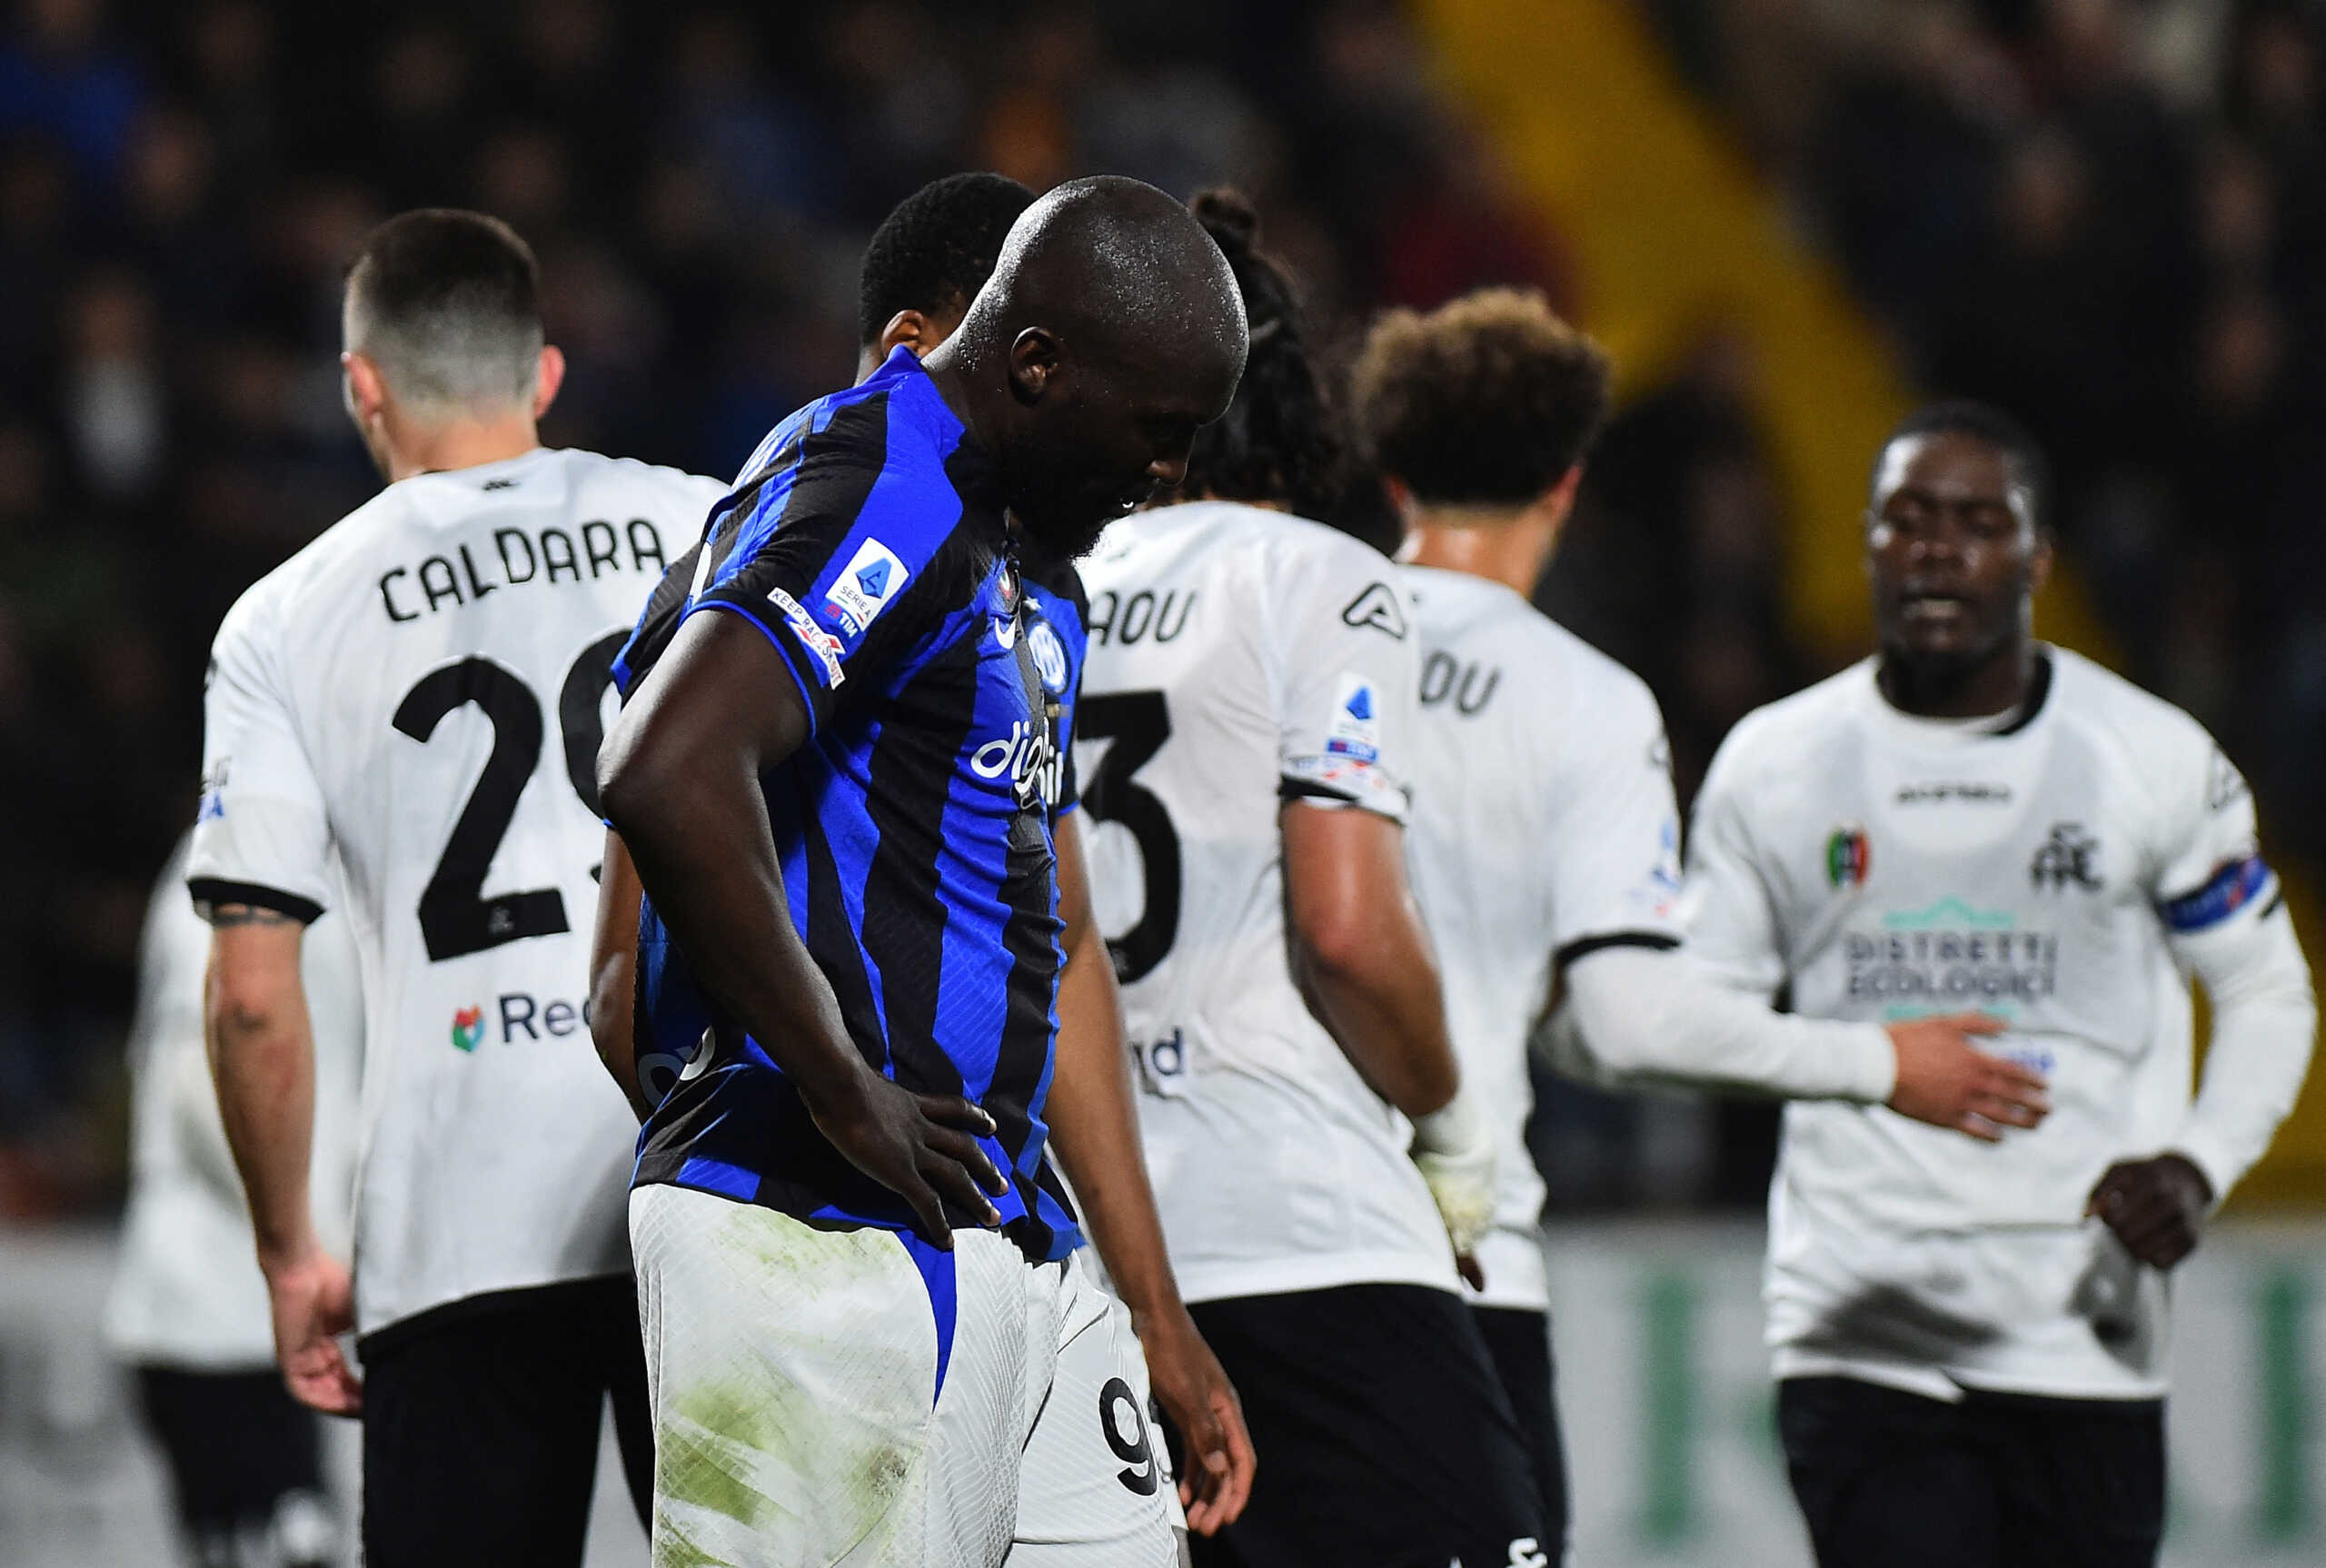 Ρομελού Λουκάκου – Ανακοινώσεις από Serie A και Ίντερ: «Μείνε δυνατός, είμαστε μαζί σου»